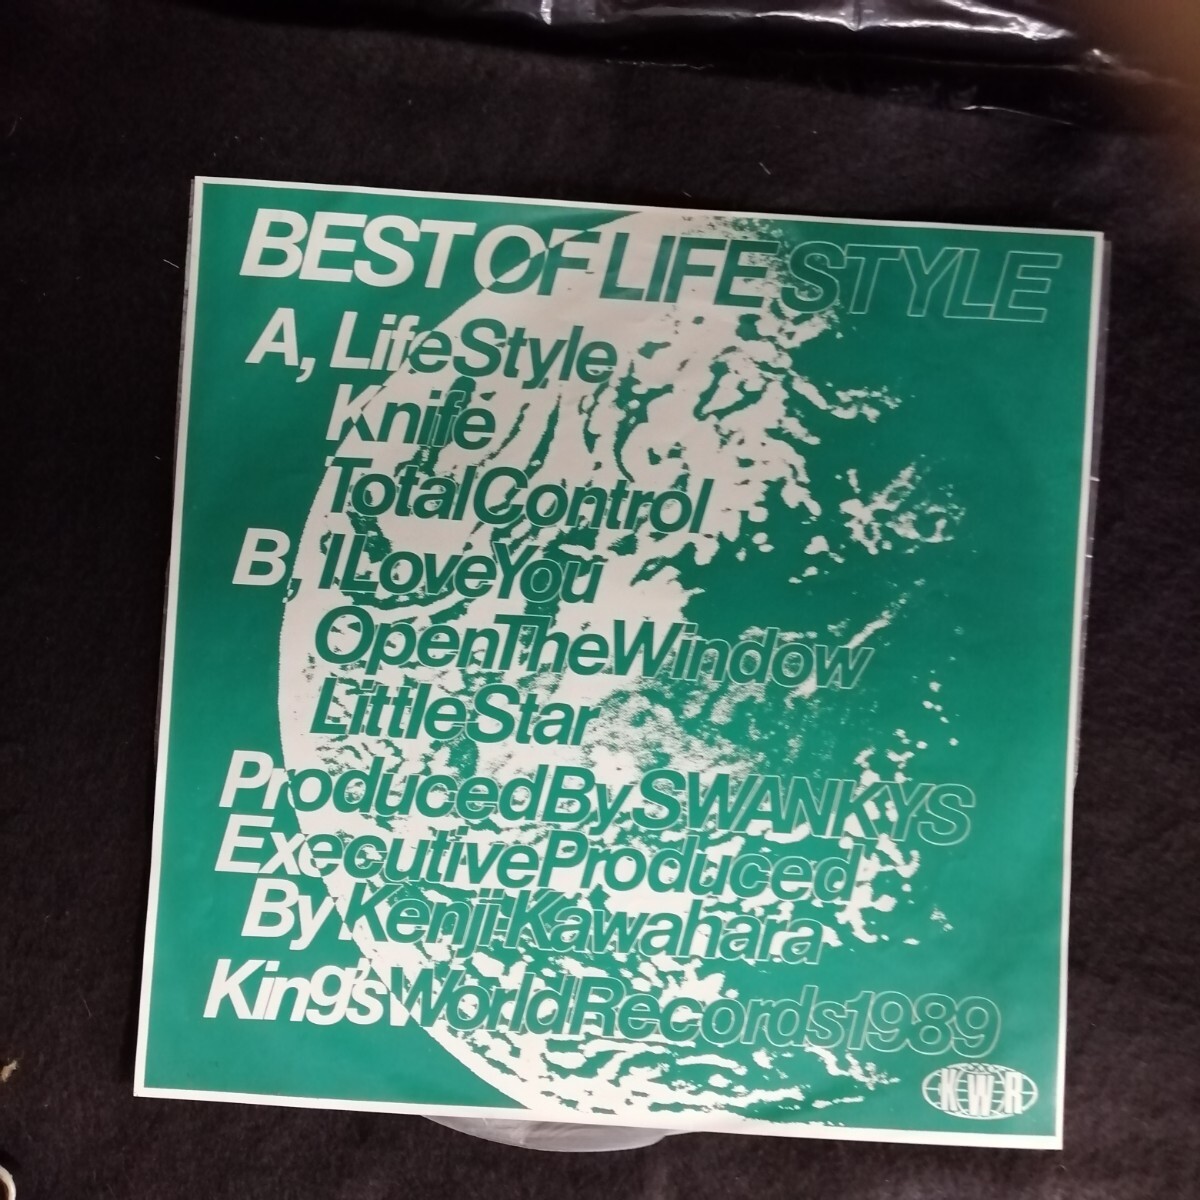 D04 б/у LP б/у запись SWANKYS best of life style! записано в Японии KK-008 прозрачный винил s one ключ z японский punk 